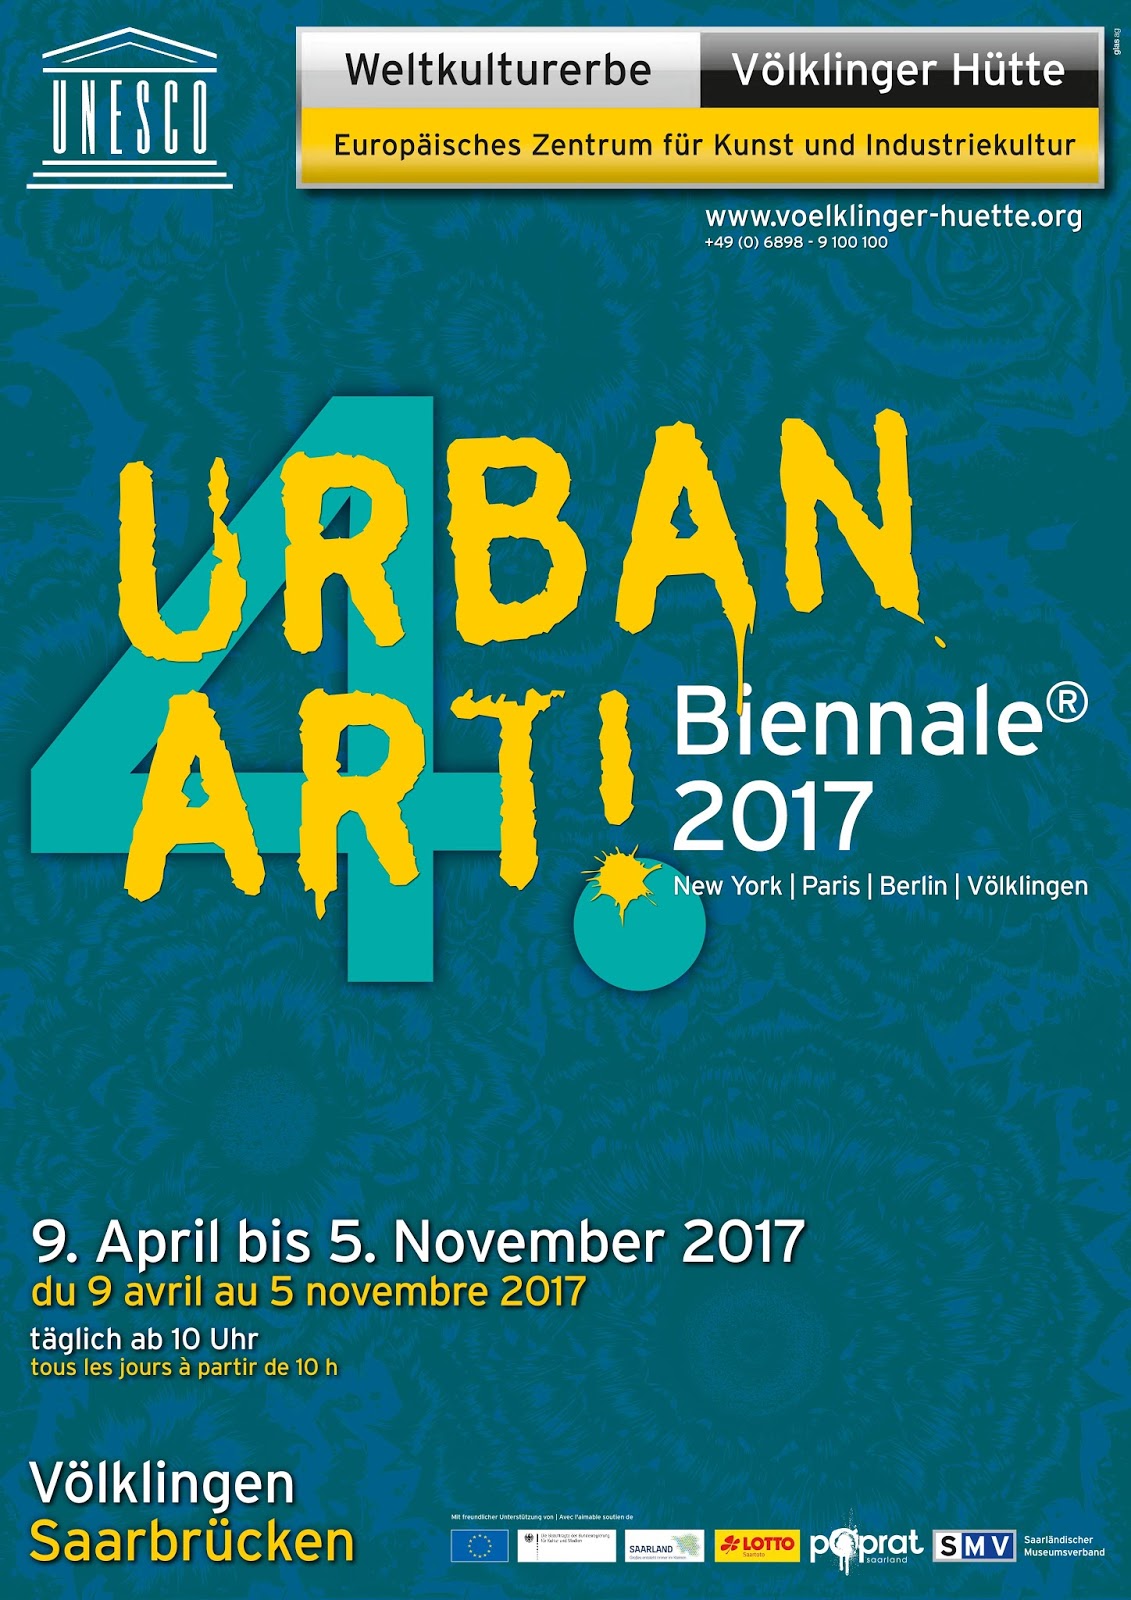 Plakat der "UrbanArt Biennale® 2017" im Weltkulturerbe Völklinger Hütte Copyright: Weltkulturerbe Völklinger Hütte/Glas AG 